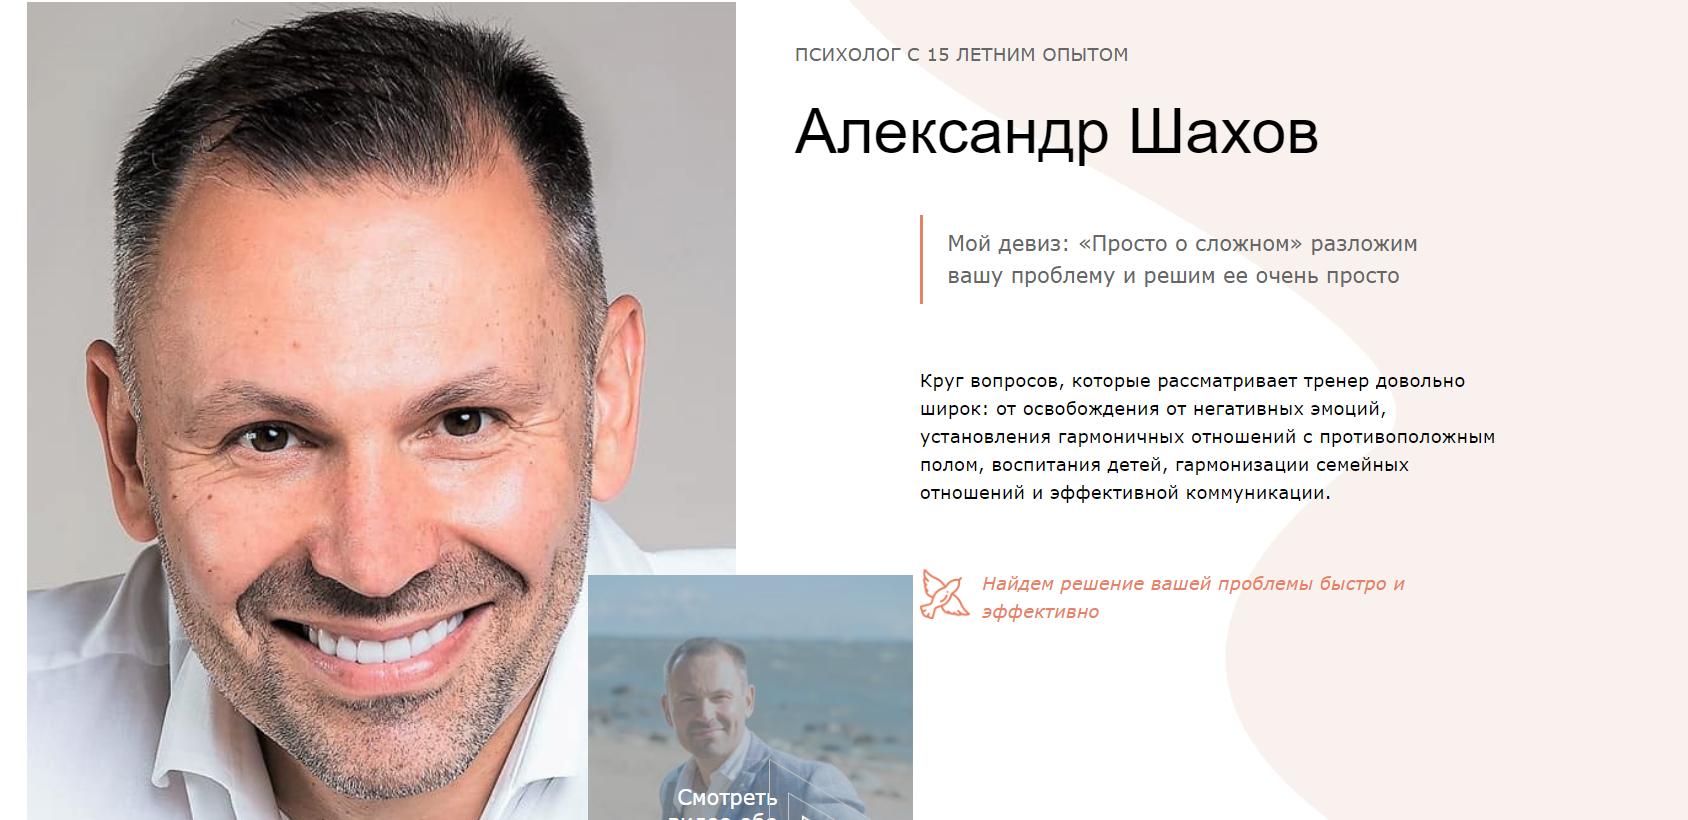 Александр Шахов психолог